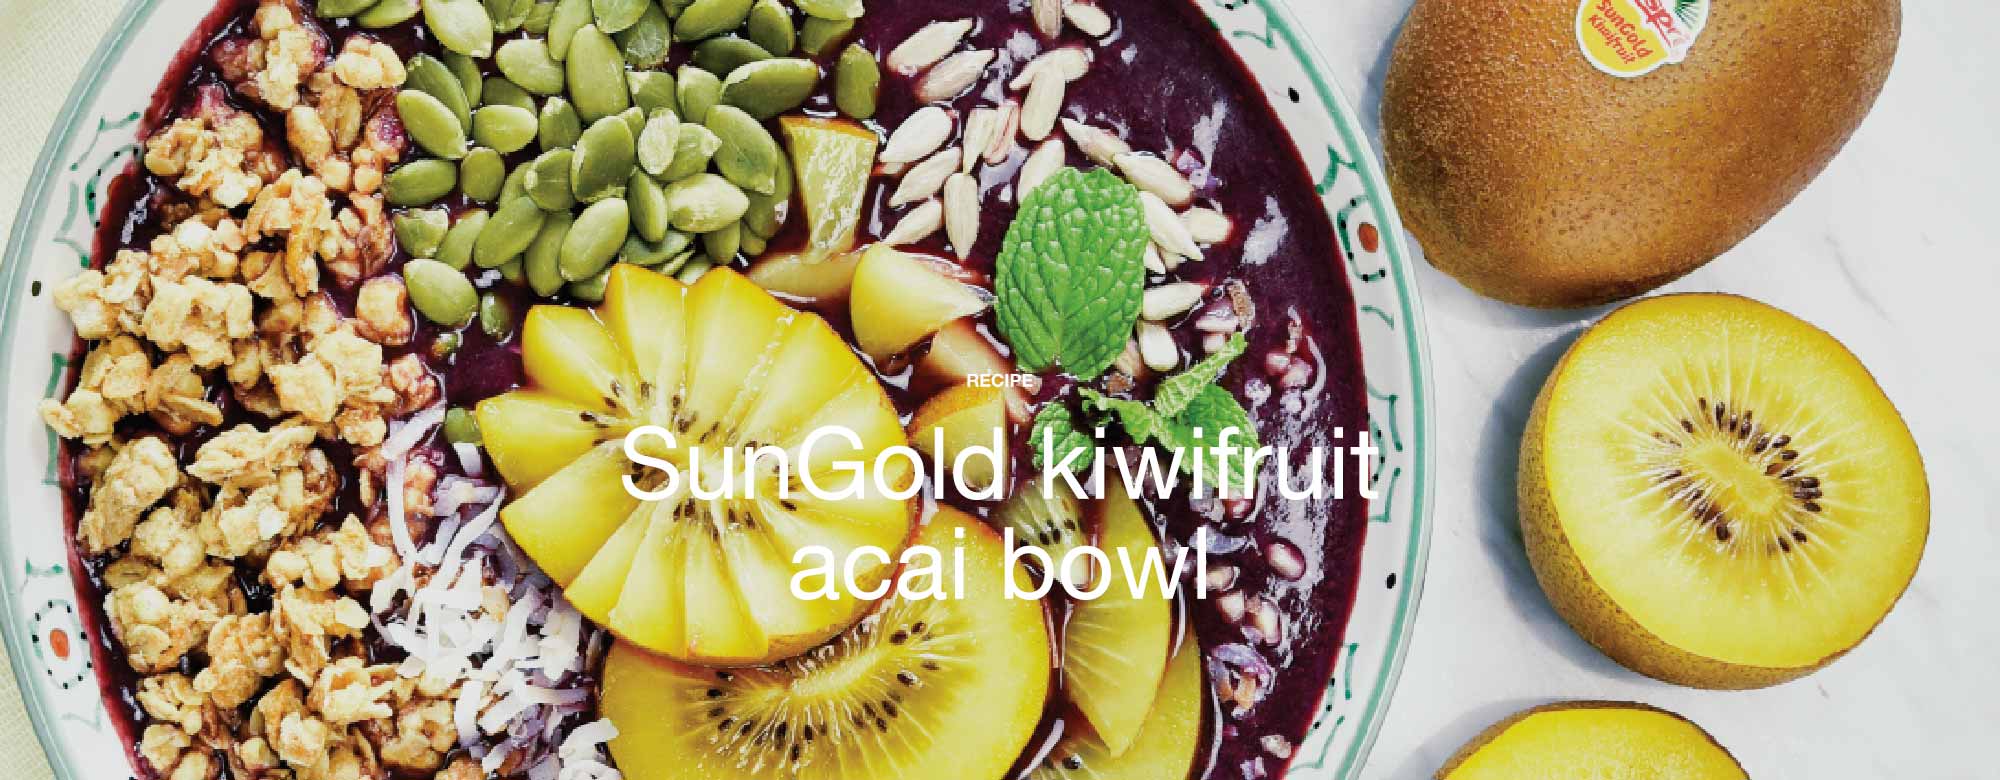 SunGold kiwifruit acai bowl